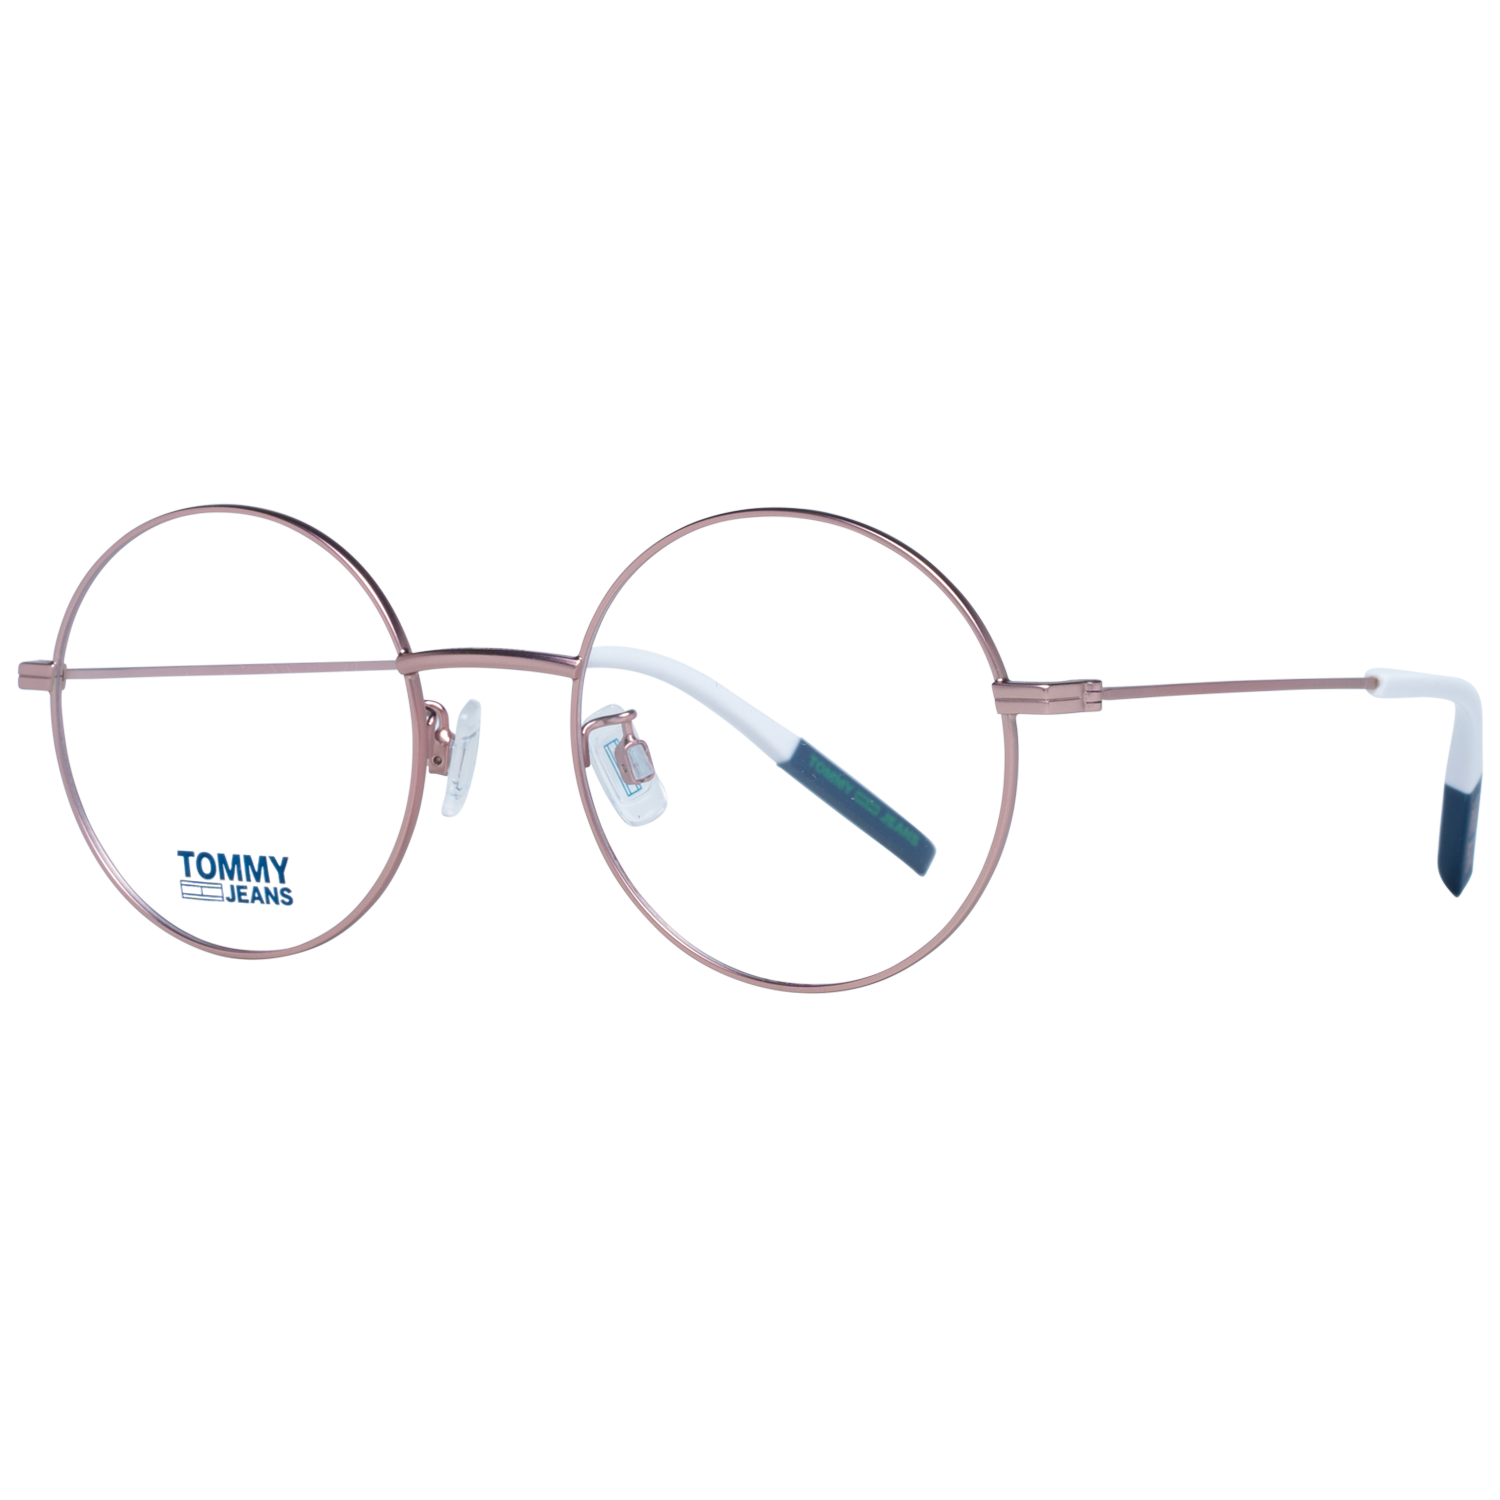 Tommy Hilfiger Frames Tommy Hilfiger Optical Frame TJ 0023 8KJ 49 Eyeglasses Eyewear UK USA Australia 